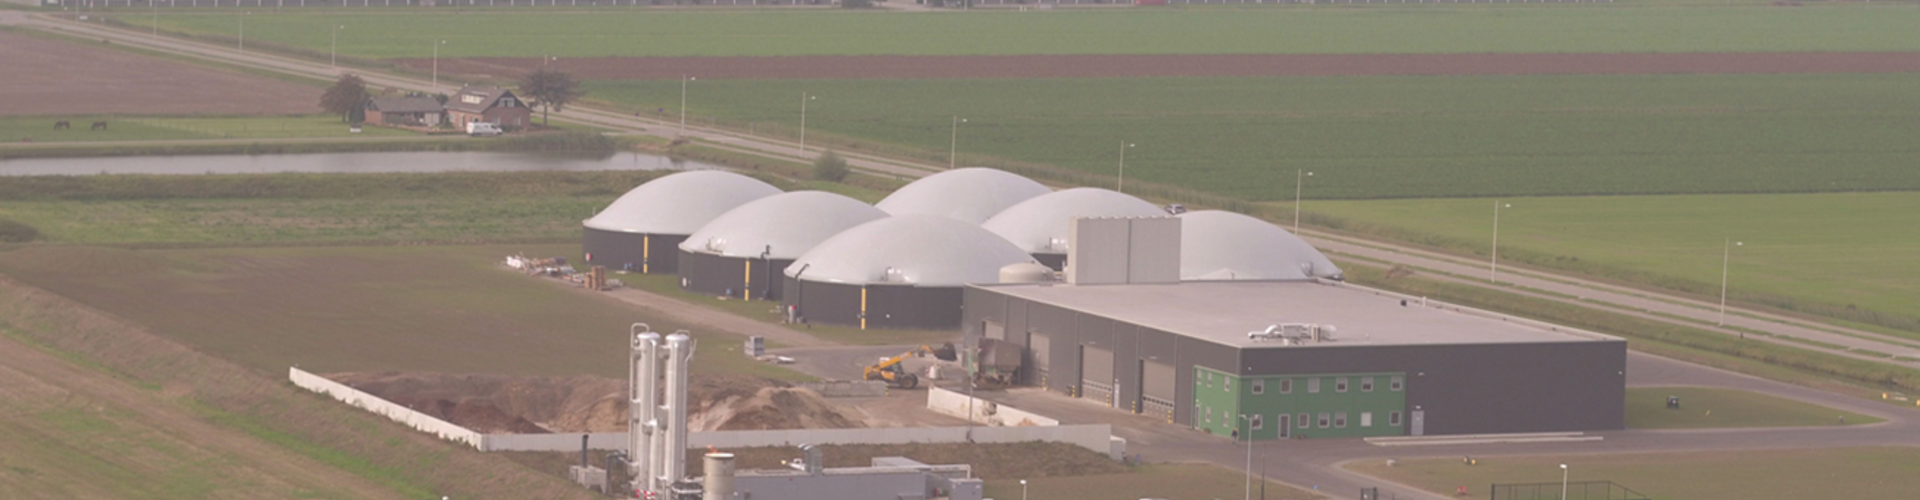 Biogas installation Bemmel, the Netherlands